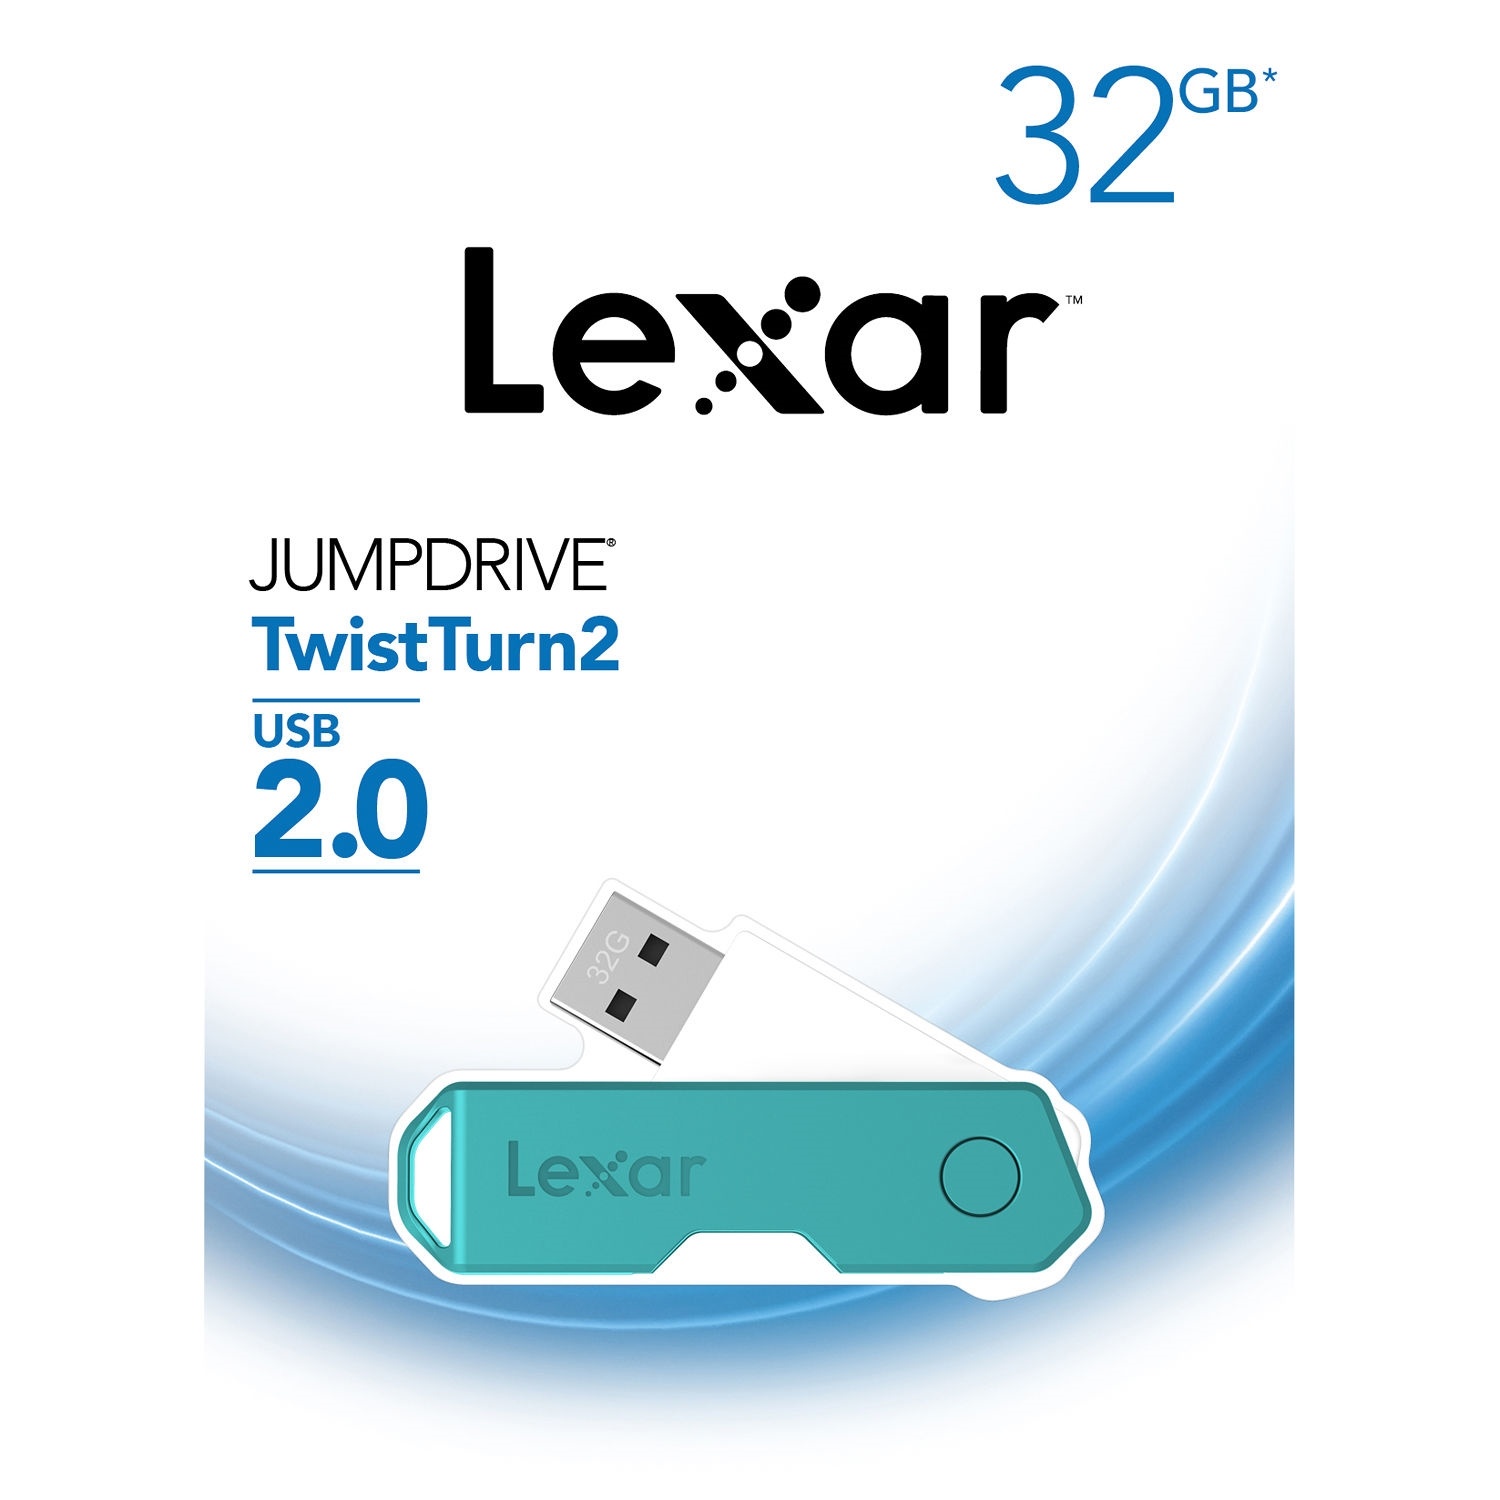 Lexar 32GB JumpDrive TwistTurn2 USB Flash Drive (Teal)